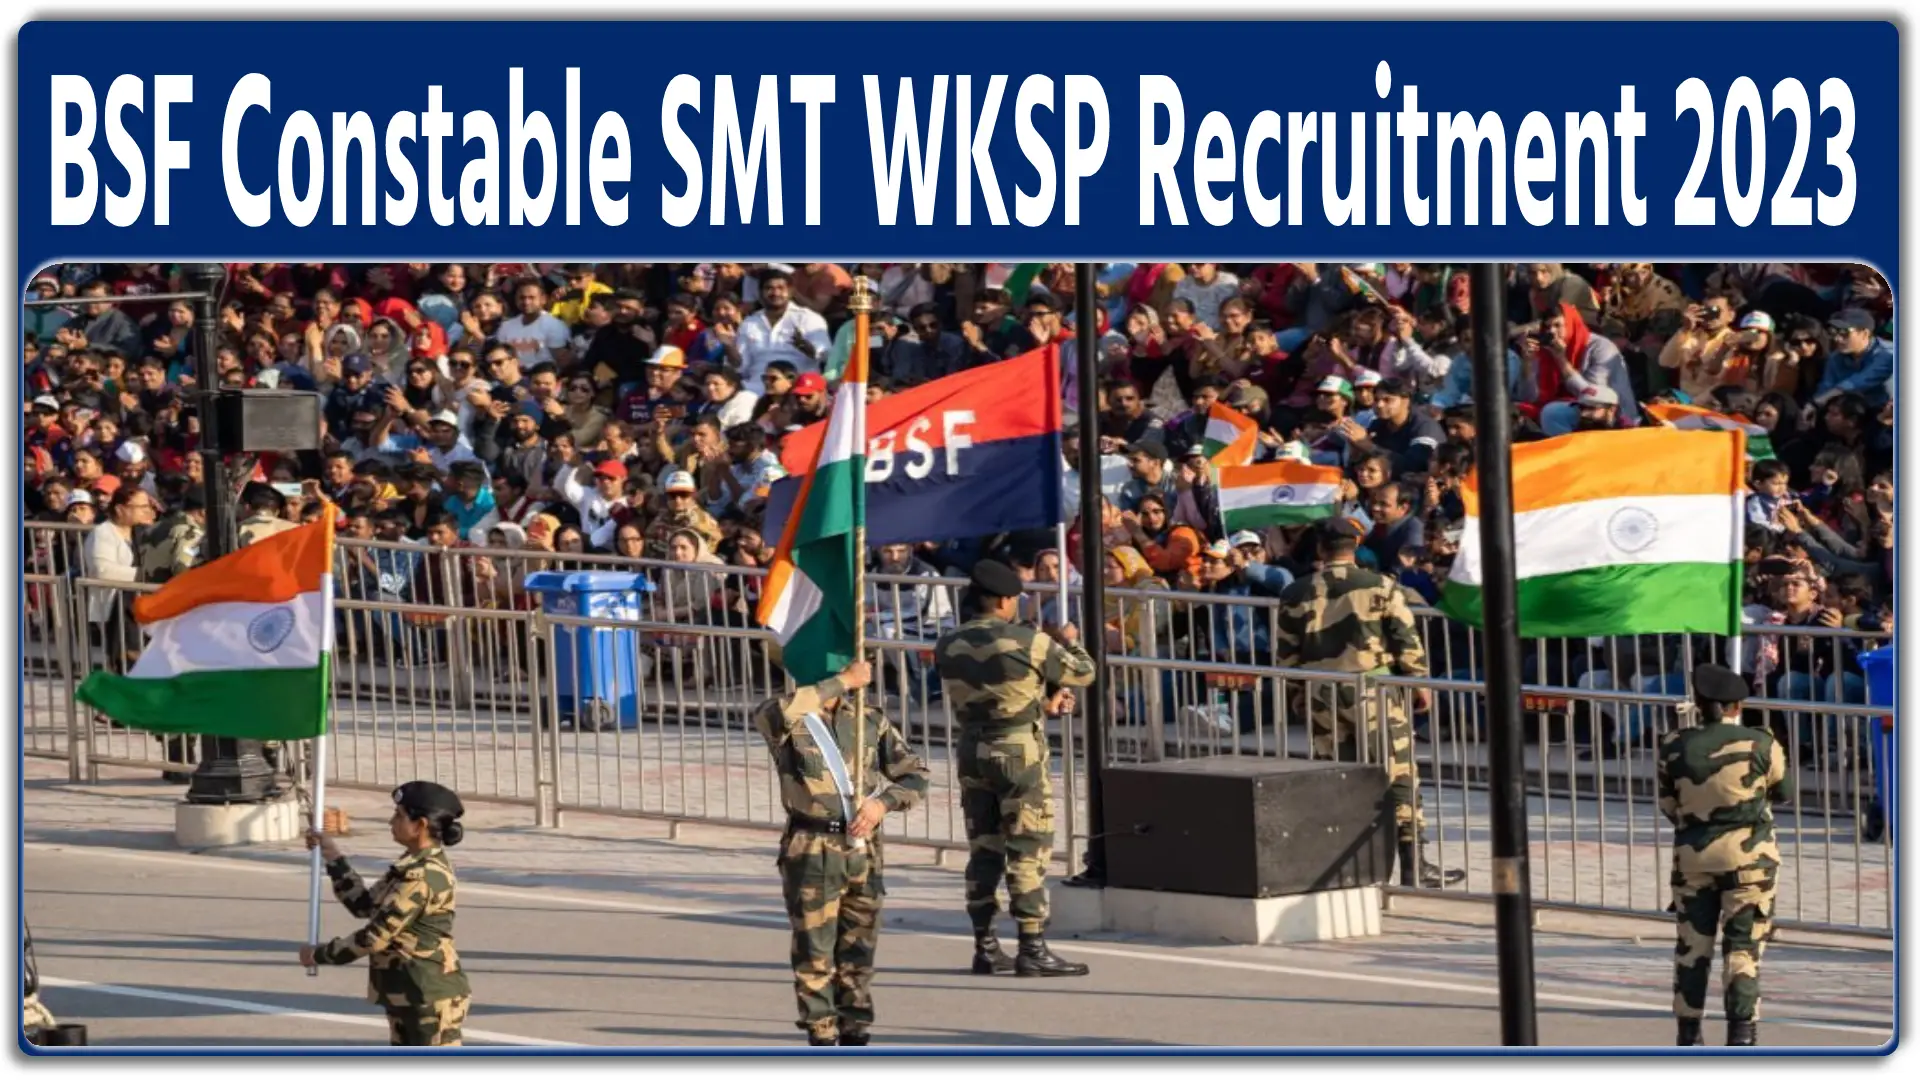 BSF Constable SMT WKSP Recruitment 2023